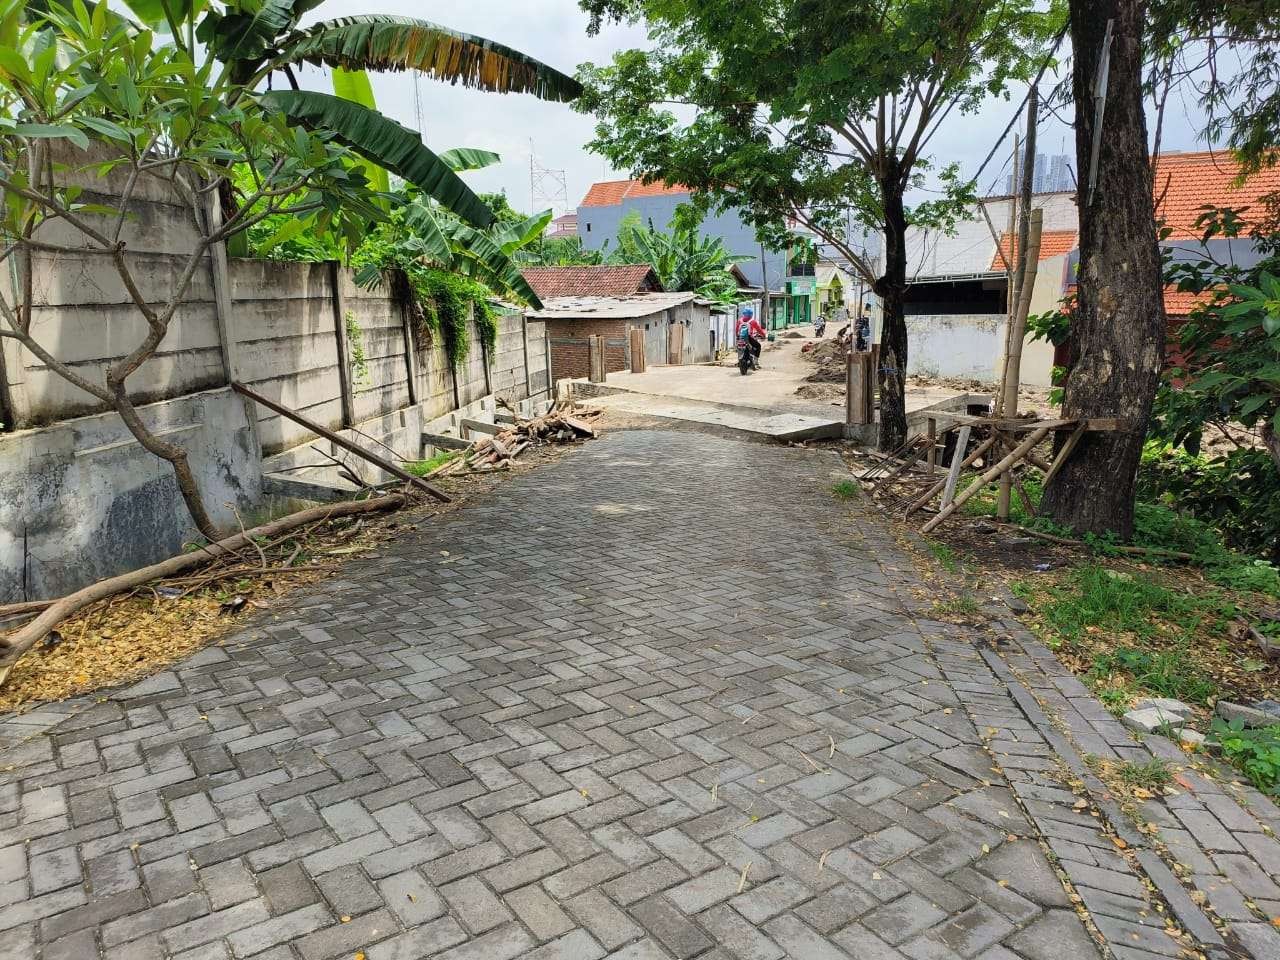 Proyek pavingisasi di wilayah Dukuh Bulu Lontar masuk konten TikTok Wawali Surbaya Armuji, dan membuat warga resah karena dinilai tidak sesuai realita. (Foto: Dokumentasi warga)